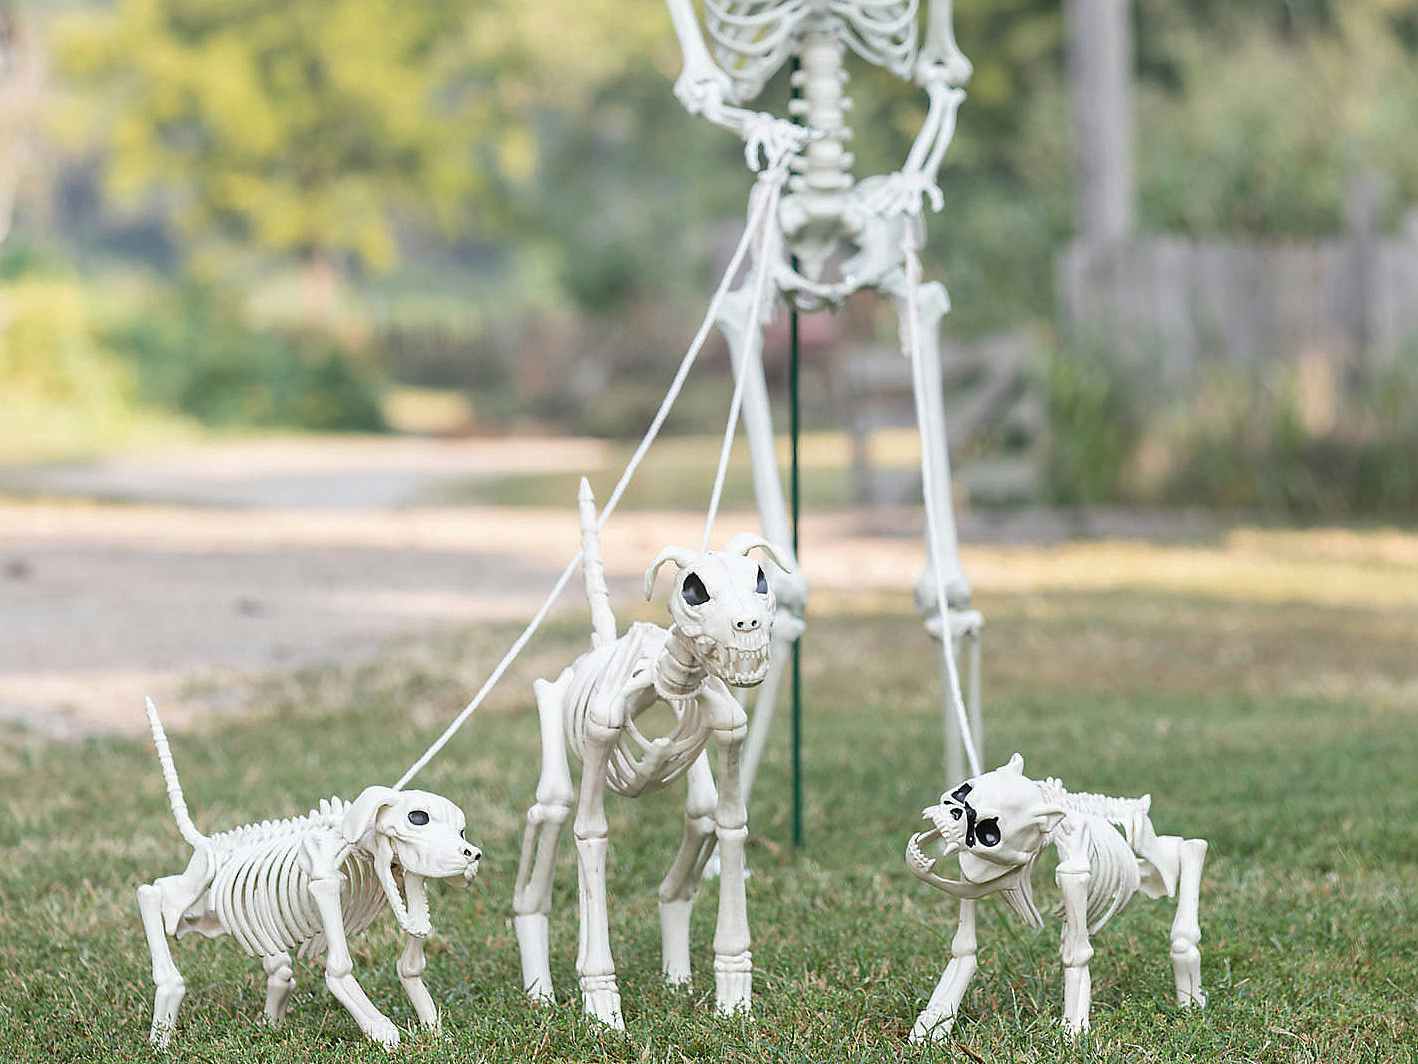 a skeleton walking dog skeletons